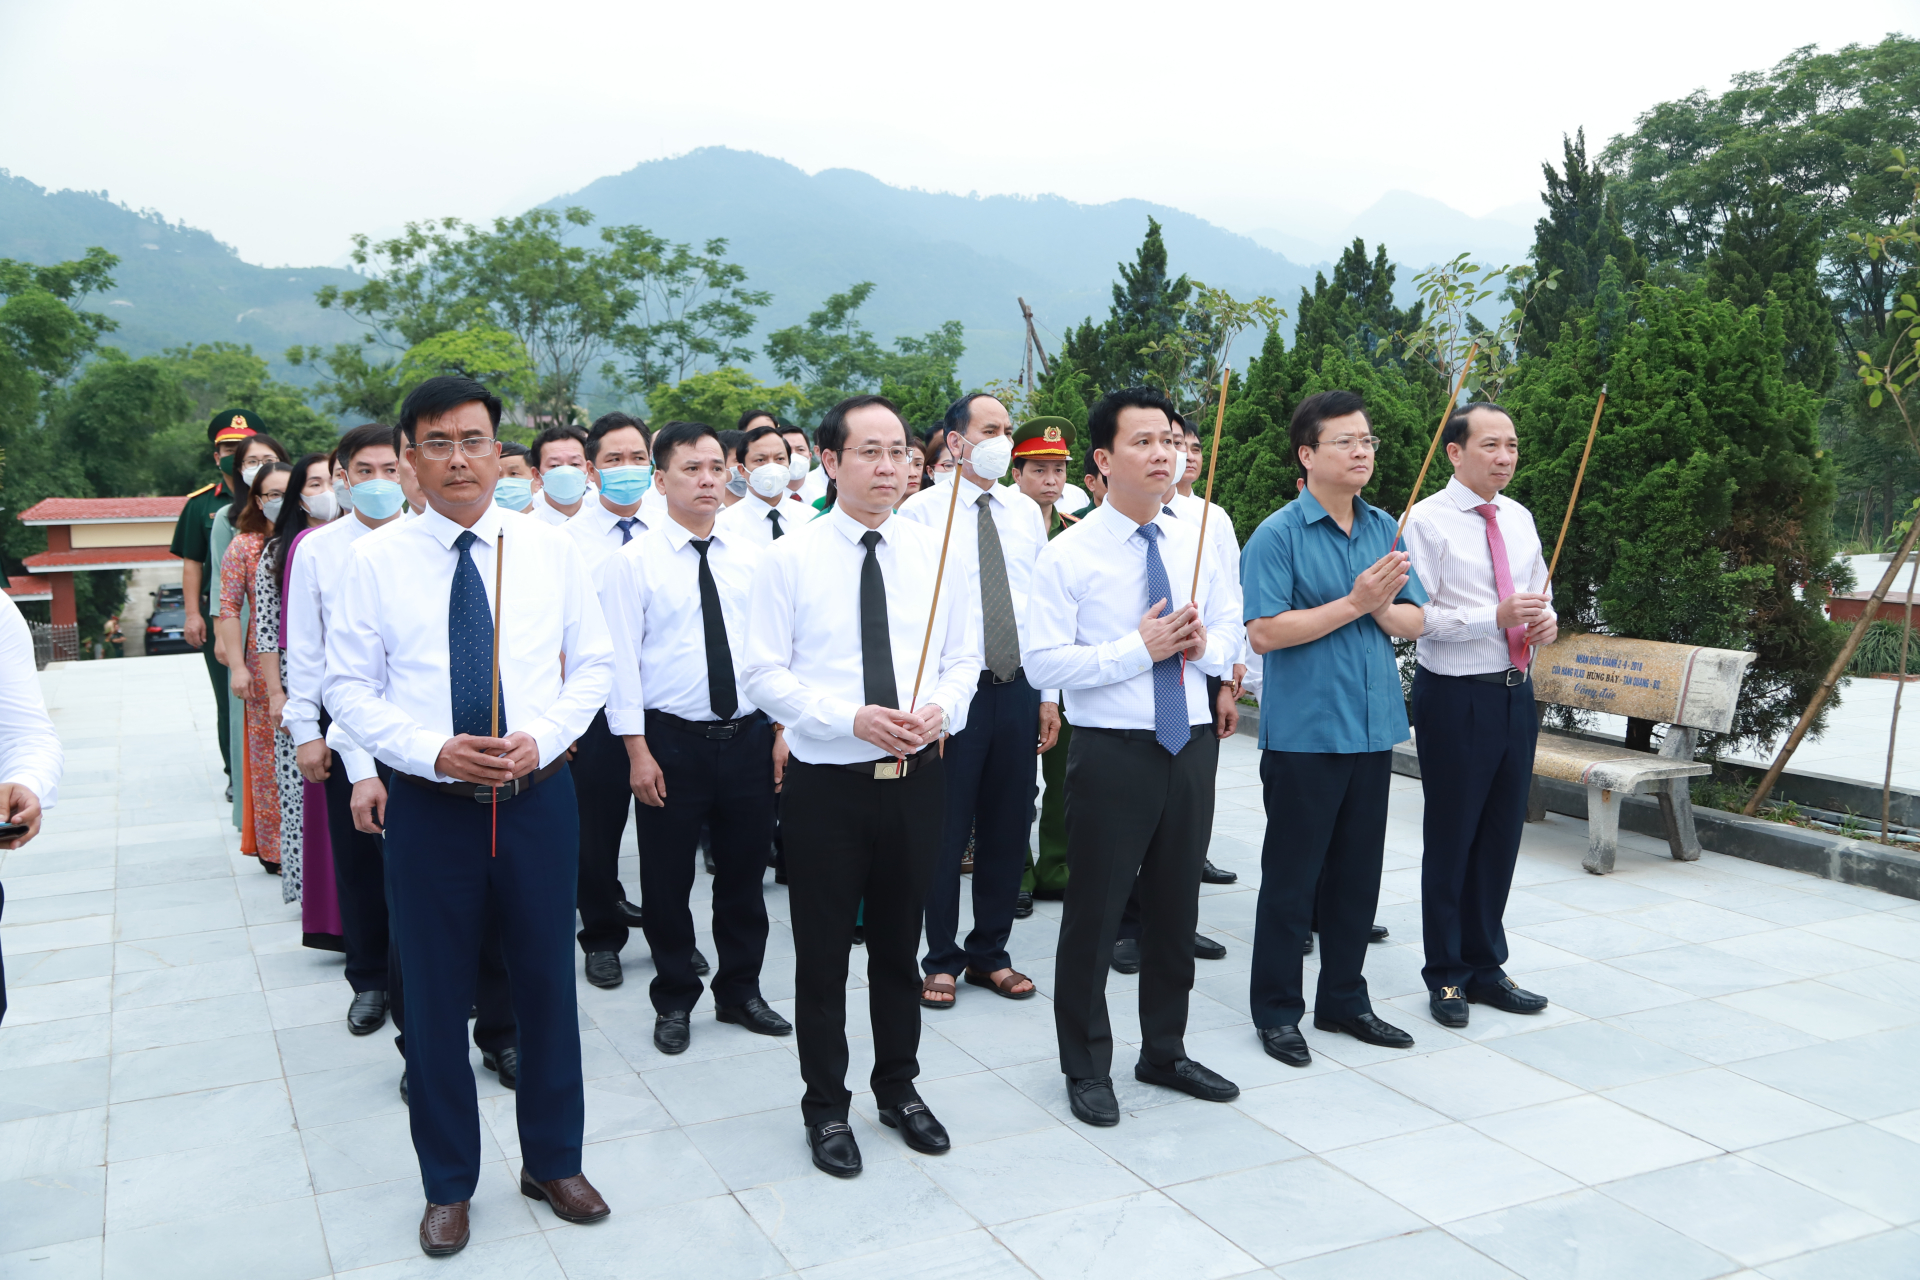 Bí thư Tỉnh ủy Đặng Quốc Khánh cùng các đồng chí lãnh đạo tỉnh và huyện Bắc Quang dâng hương tại Đài tưởng niệm trong khuôn viên nghĩa trang liệt sĩ